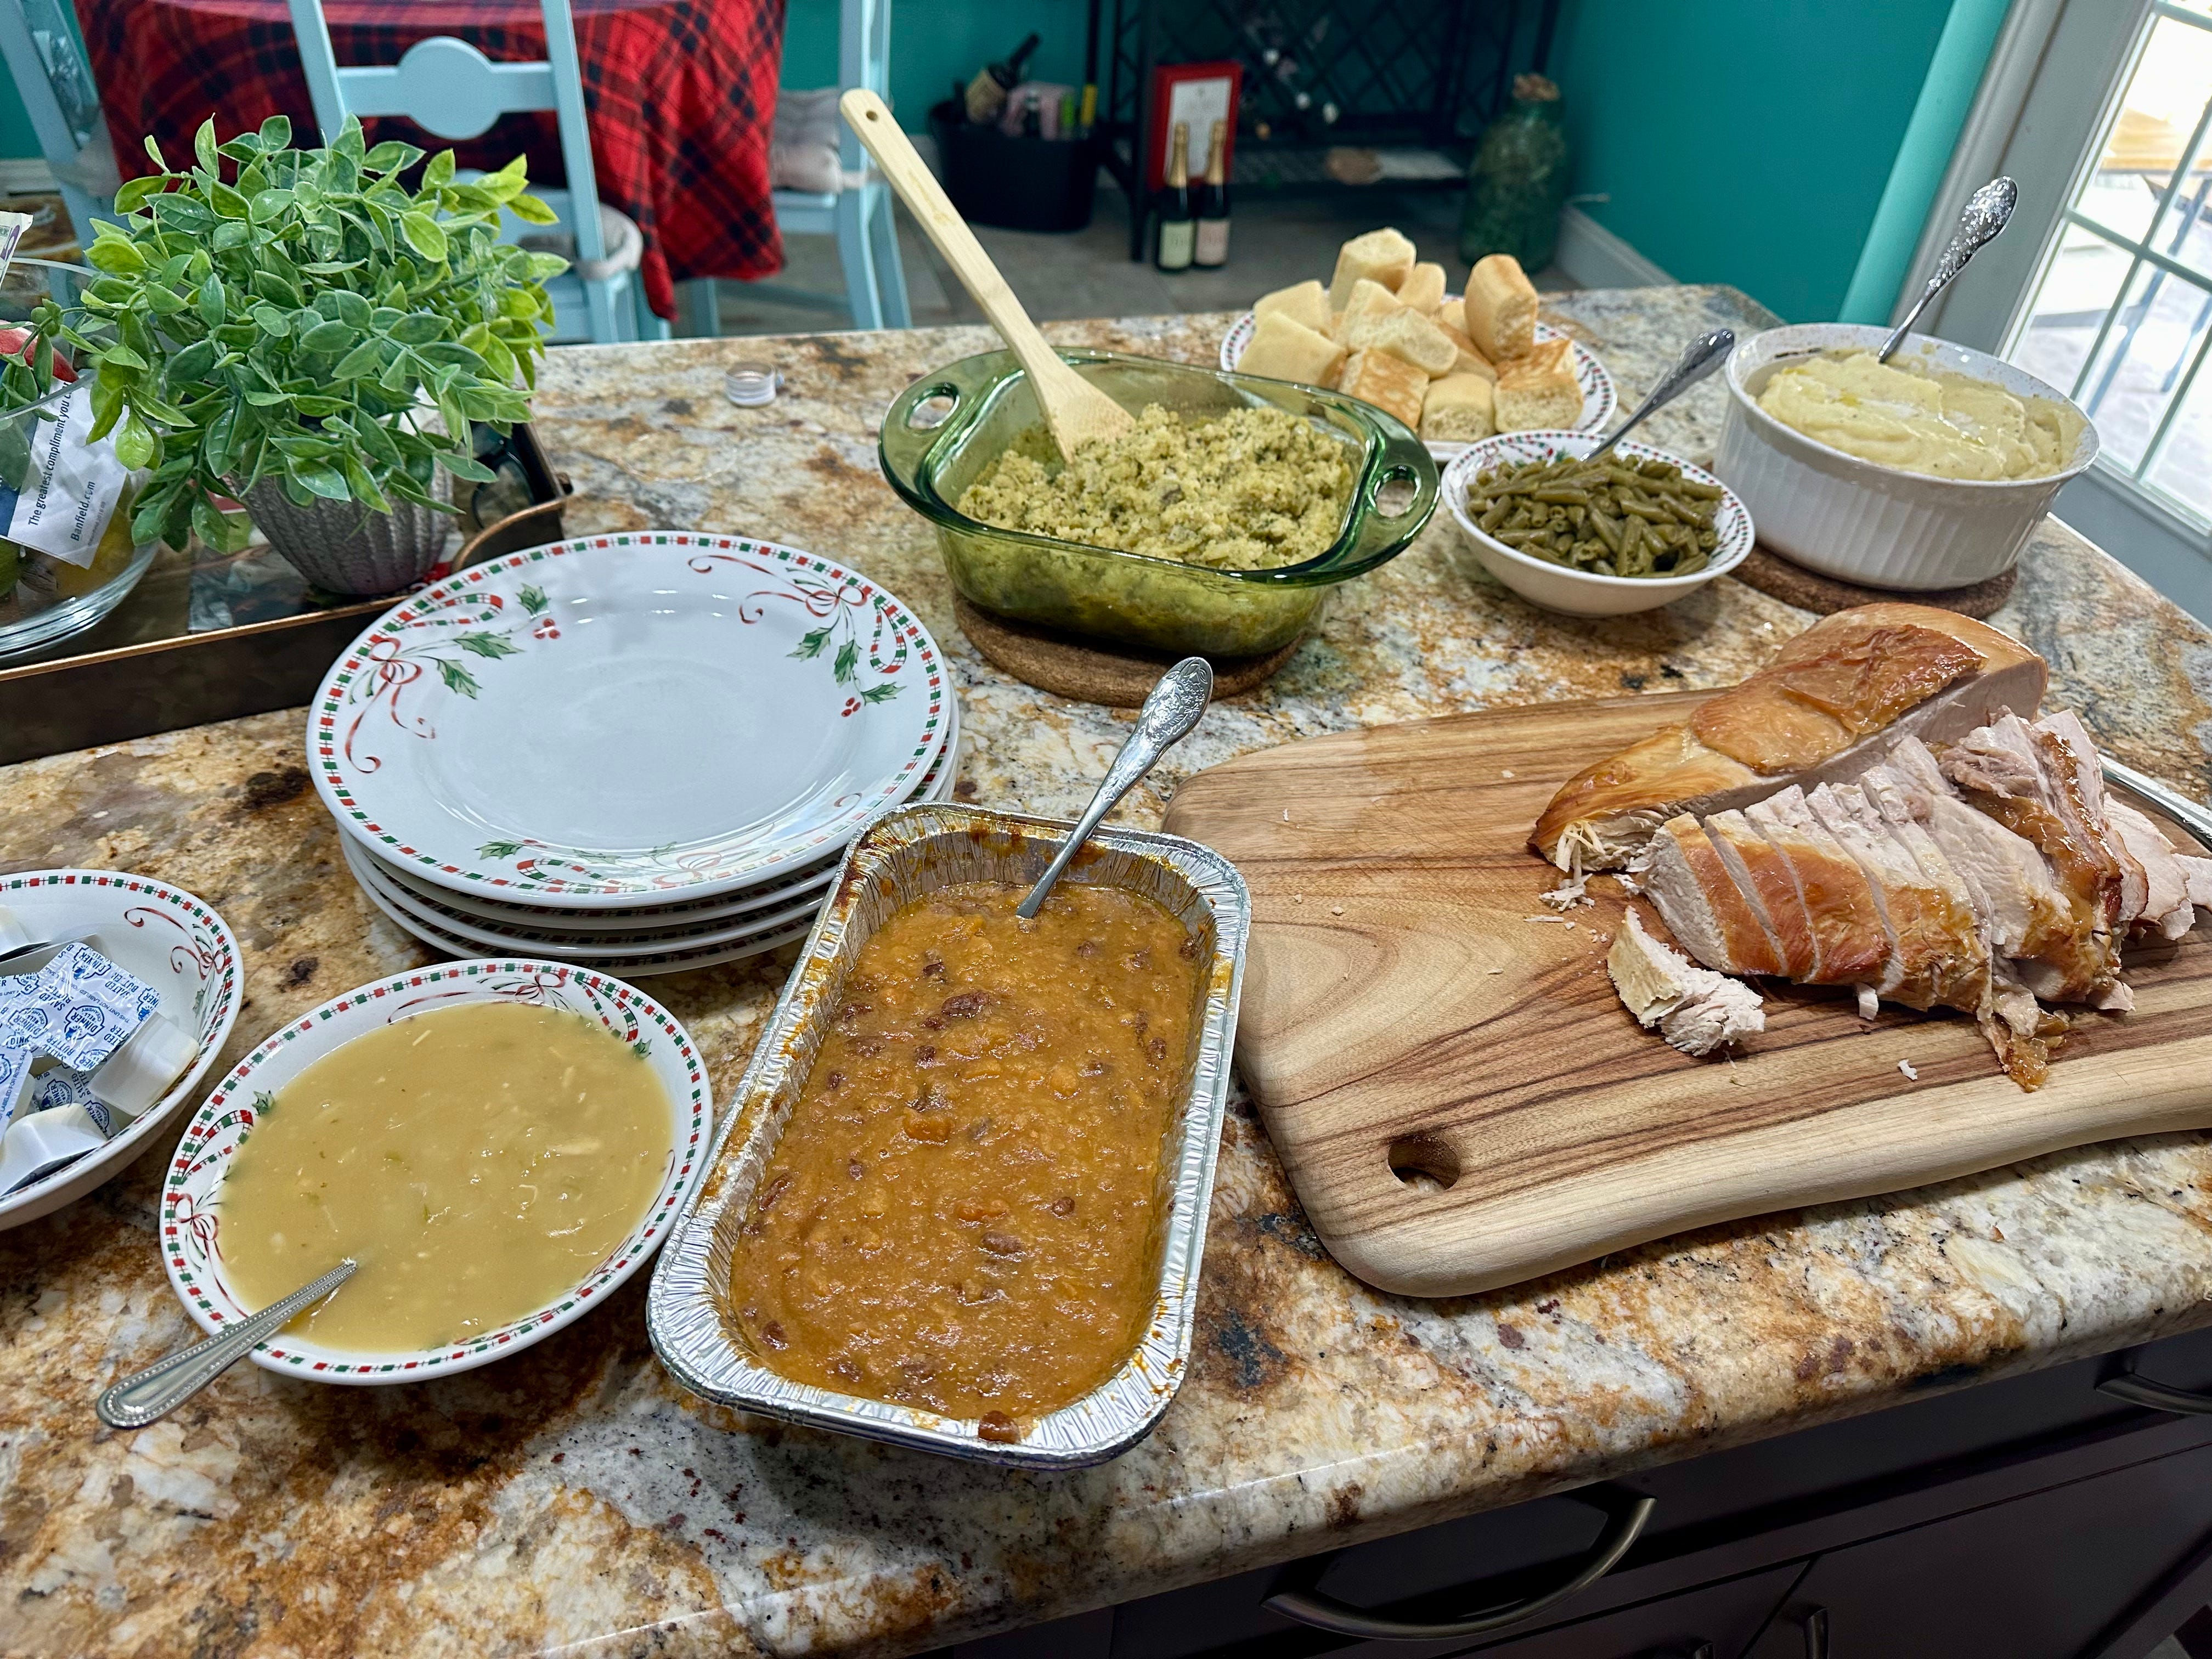 Truthahn, Soße, Füllung, Brötchen, Kartoffelpüree und andere Thanksgiving-Gerichte von Cracker Barrel in Serviergeschirr auf der Kücheninsel